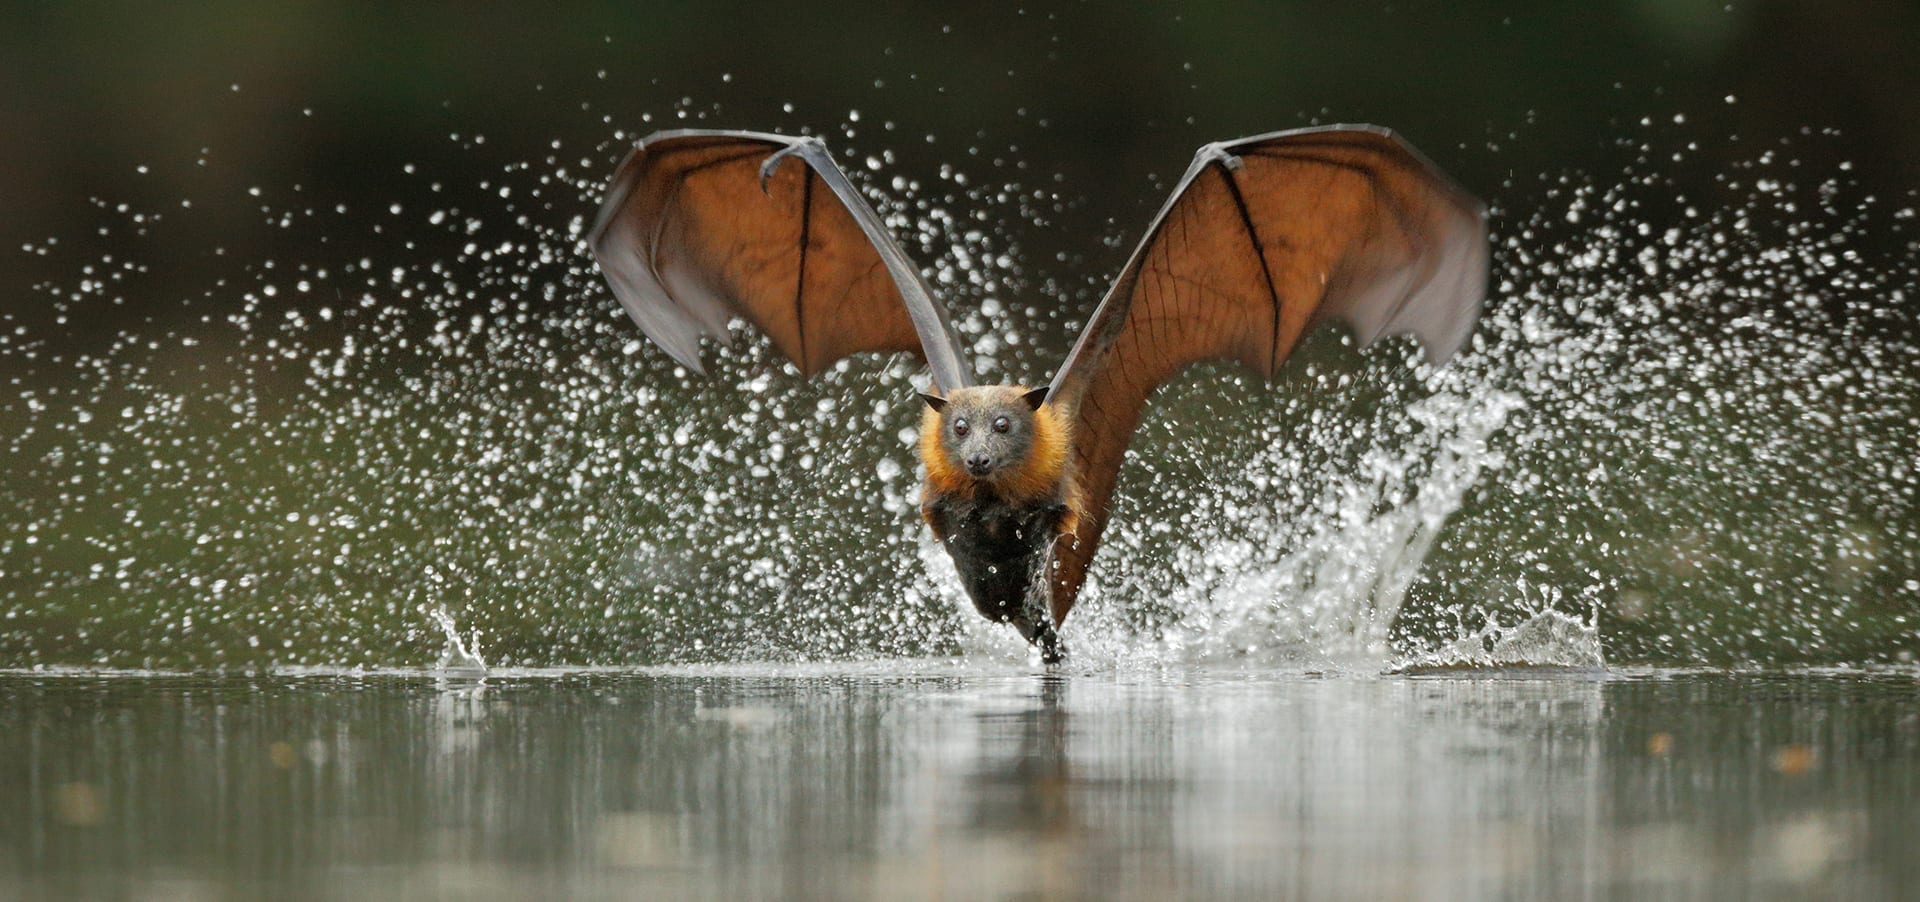 australian giant flying fox